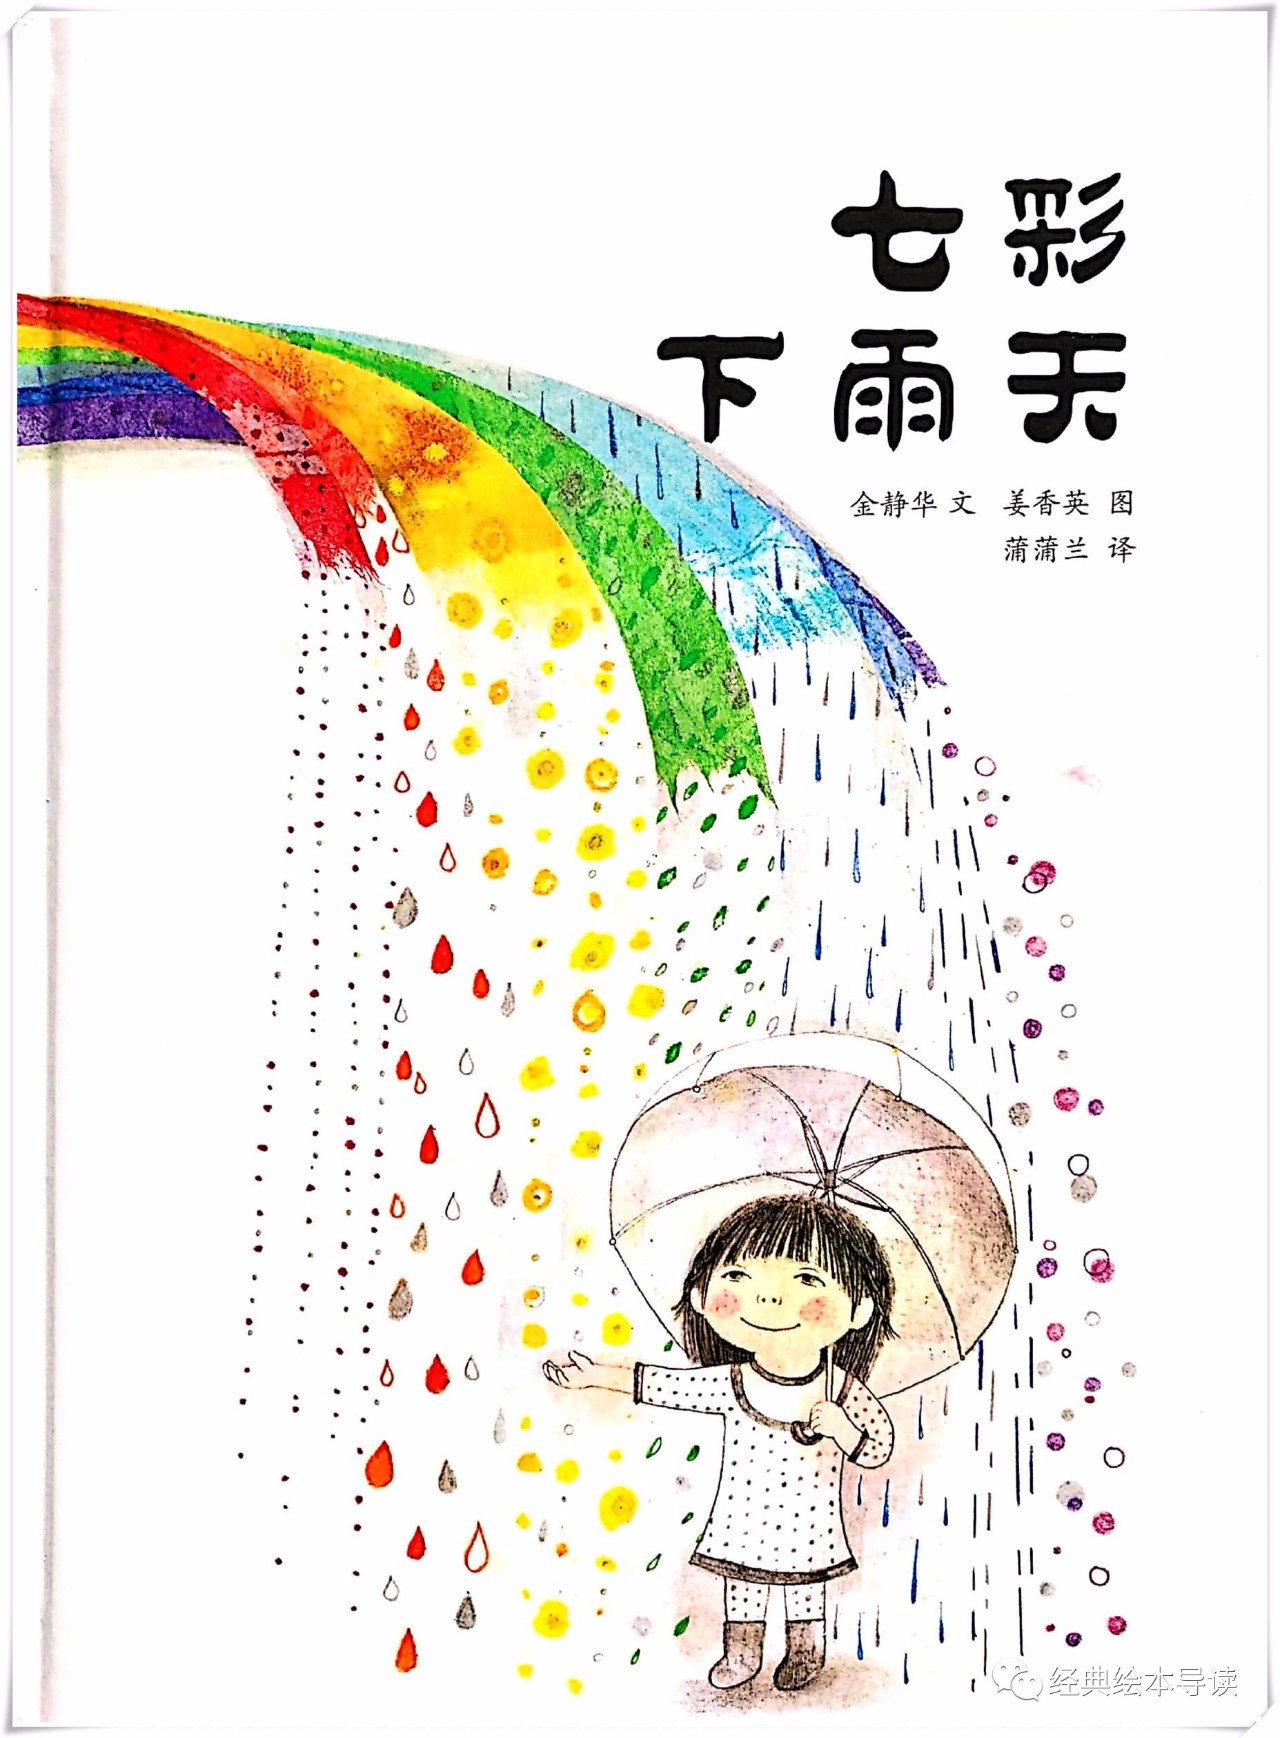 颜色和雨滴的约会——《七彩下雨天》导读